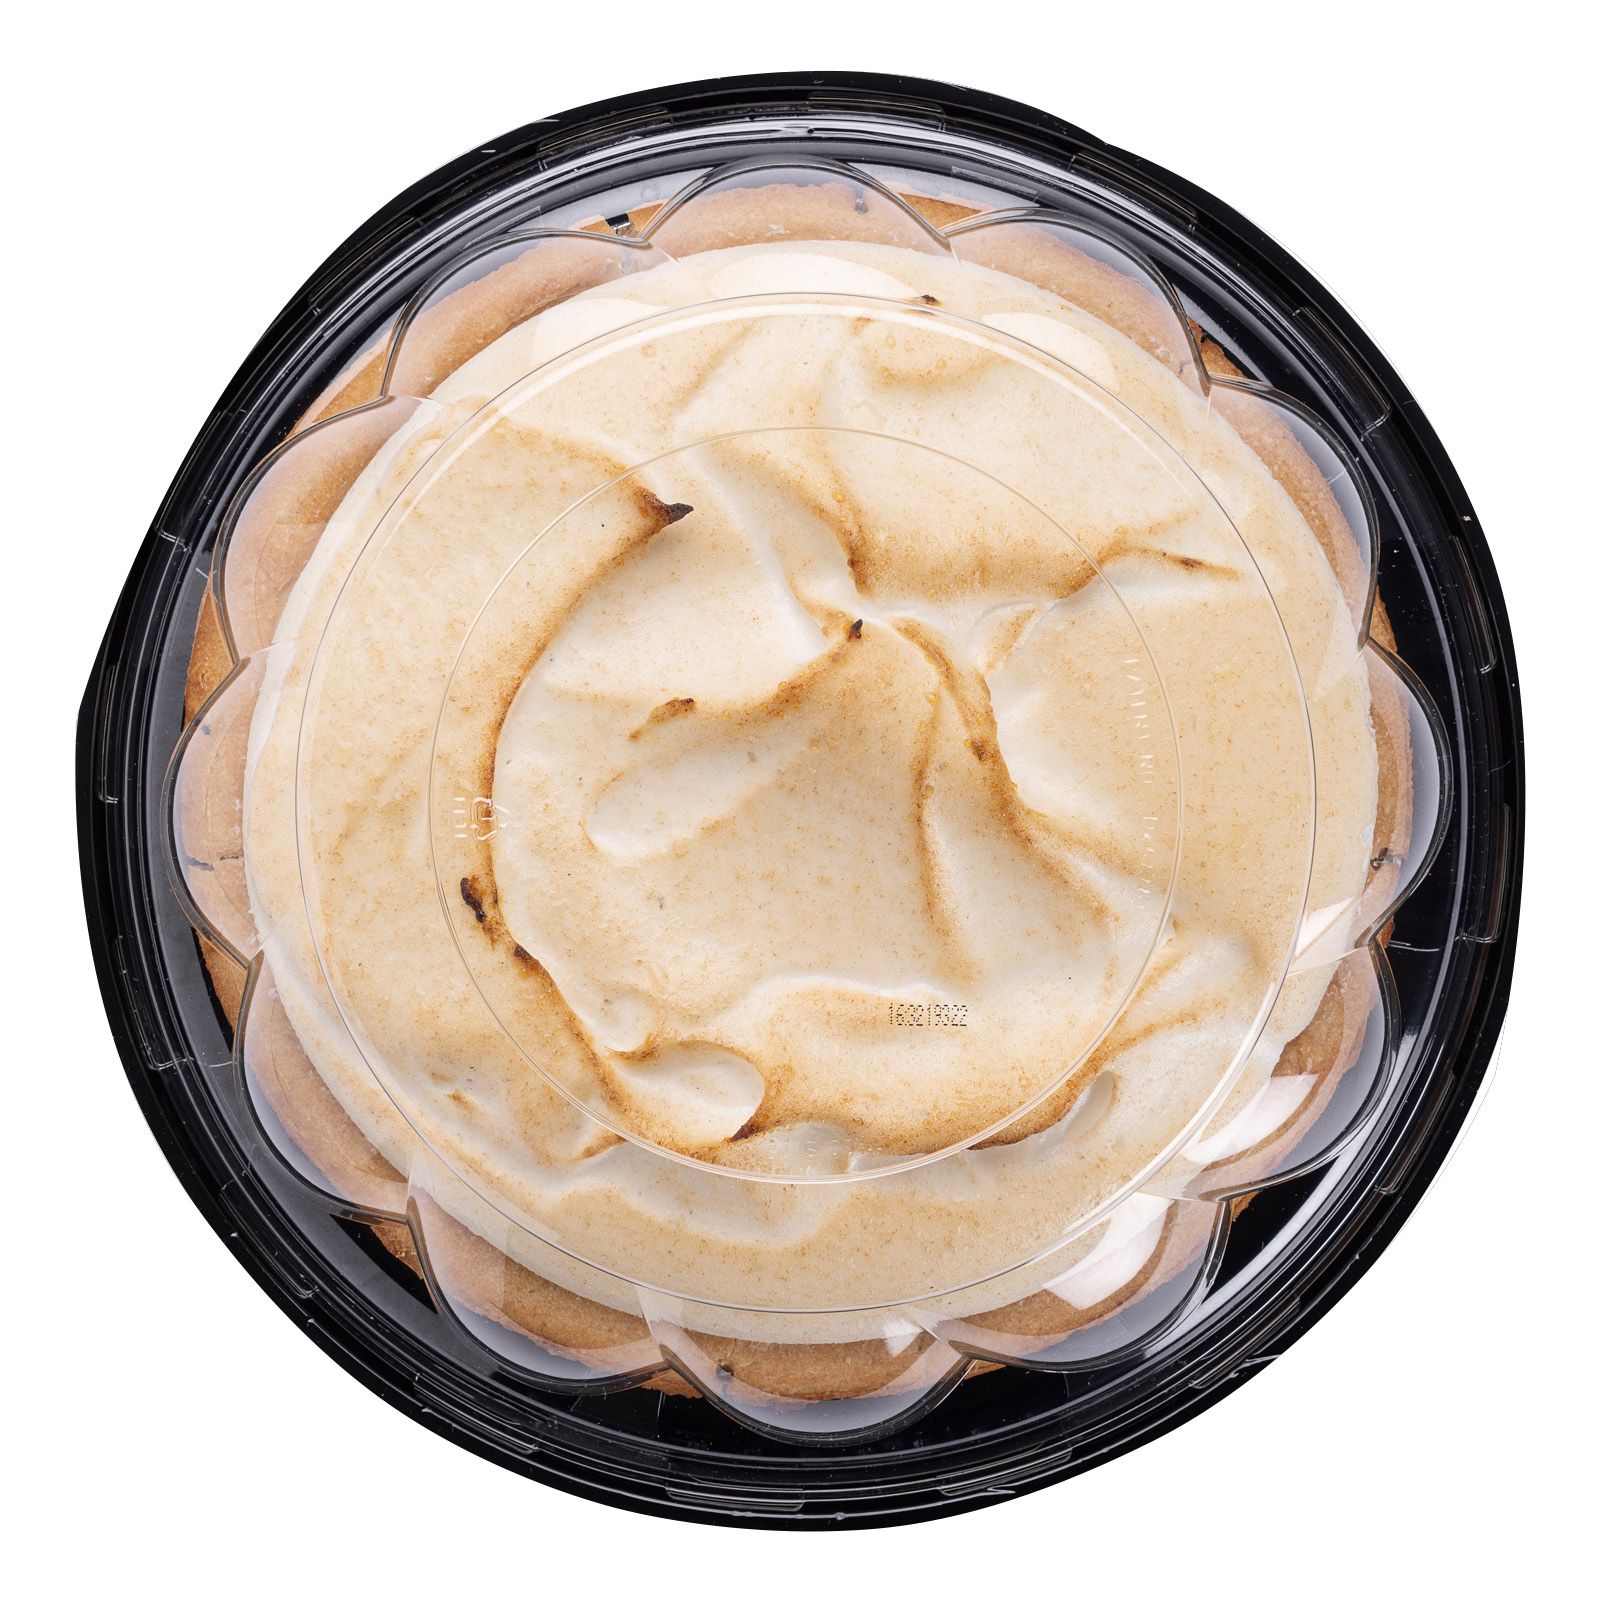 Cream of Tarter  Bakers Choice - Premium Kosher Baking Ingredients